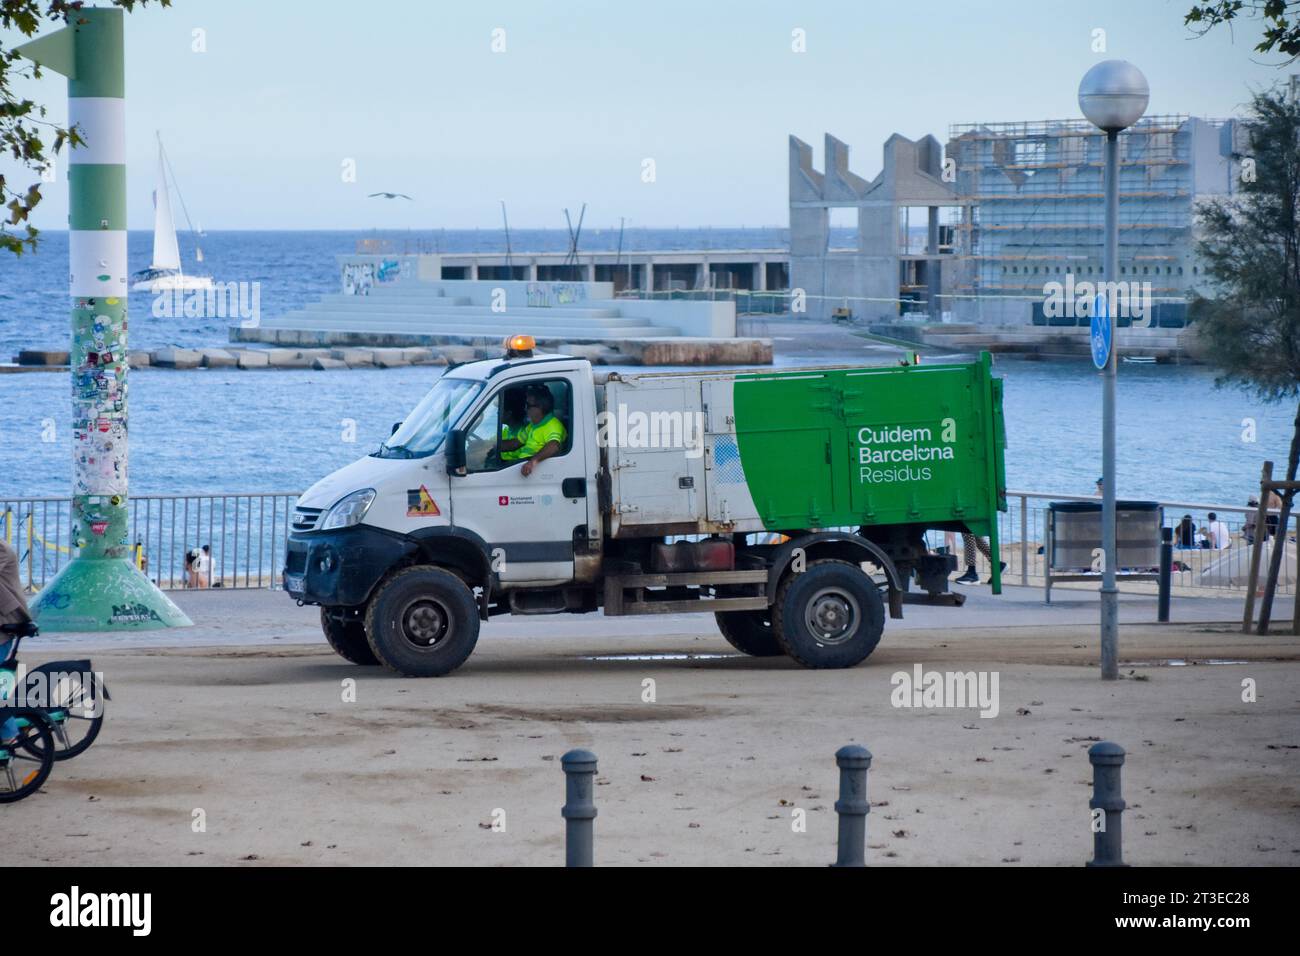 Servizi municipali, raccolta differenziata. Camion municipale per la gestione dei rifiuti in spiaggia. Barcellona, Catalogna, Spagna. Foto Stock